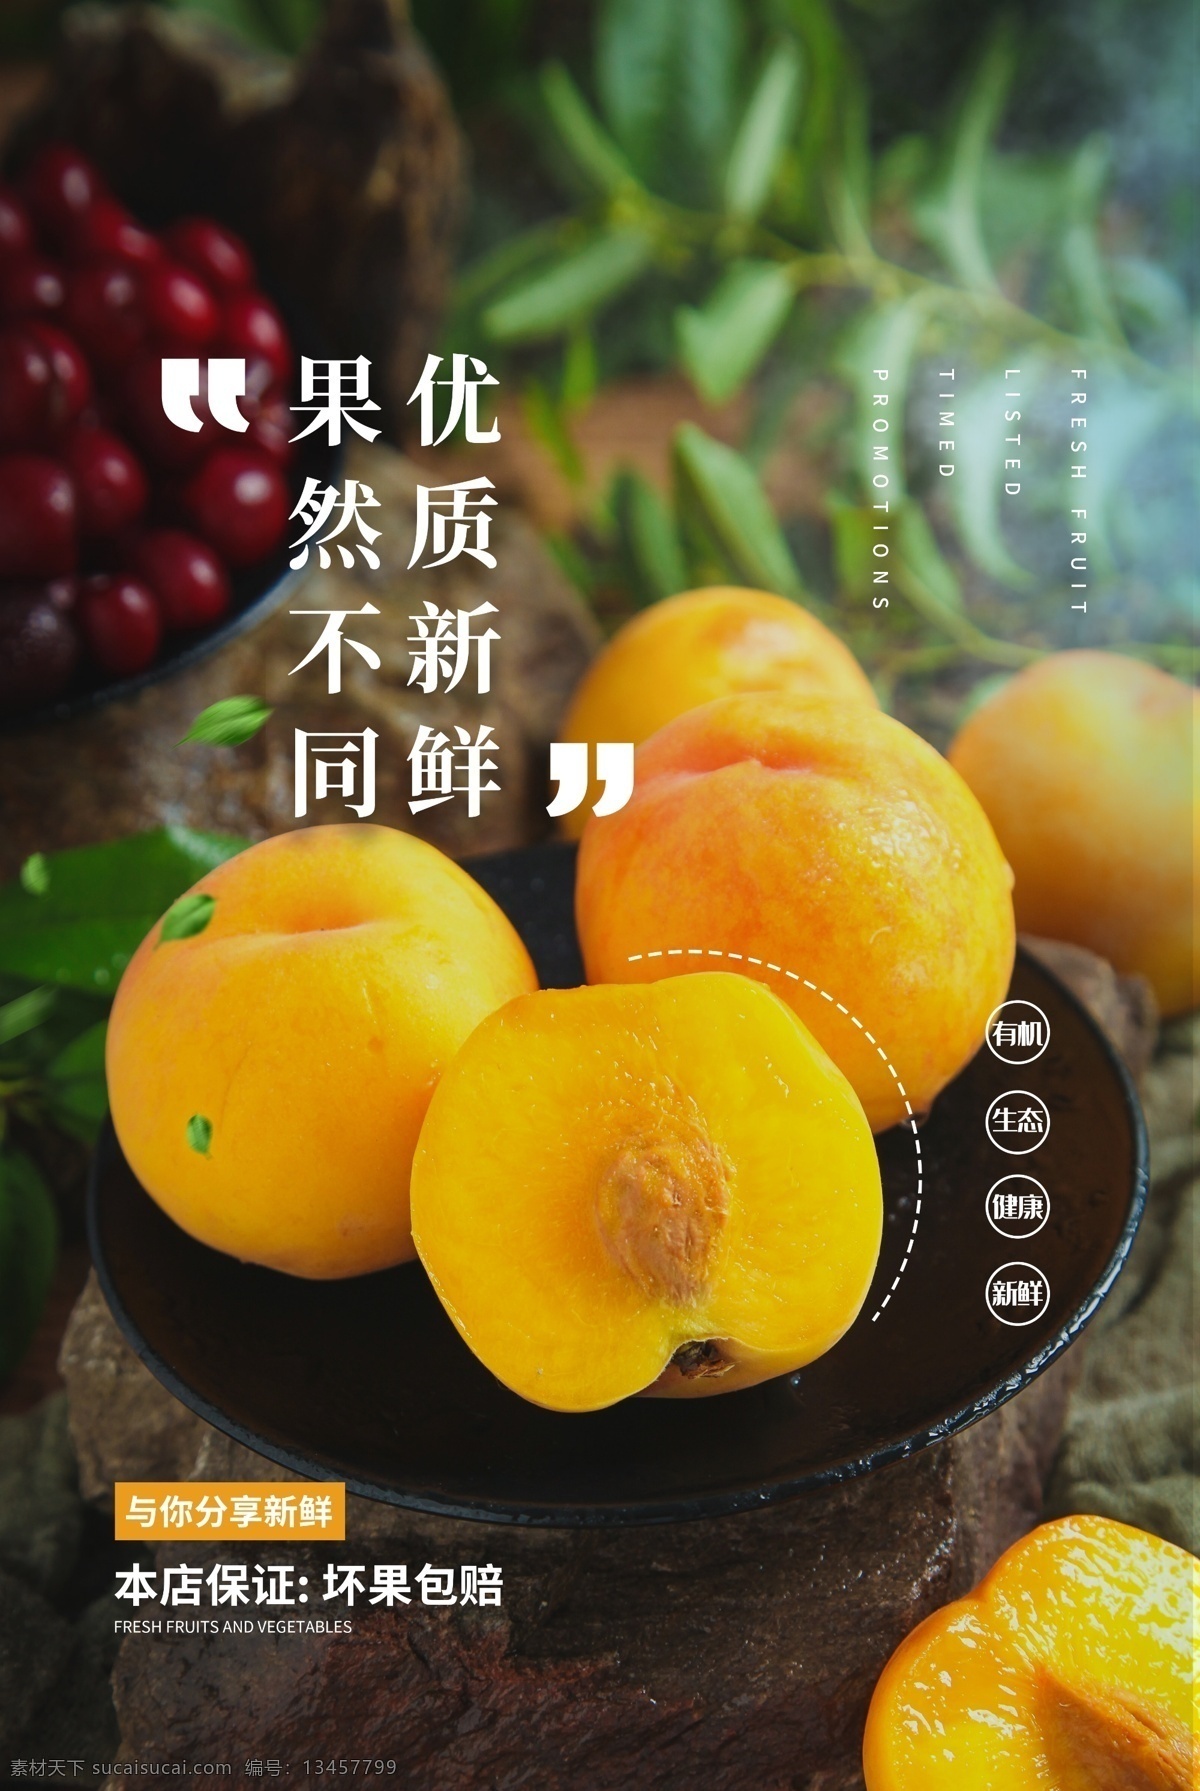 黄桃 水果 活动 宣传海报 素材图片 宣传 海报 餐饮美食 类